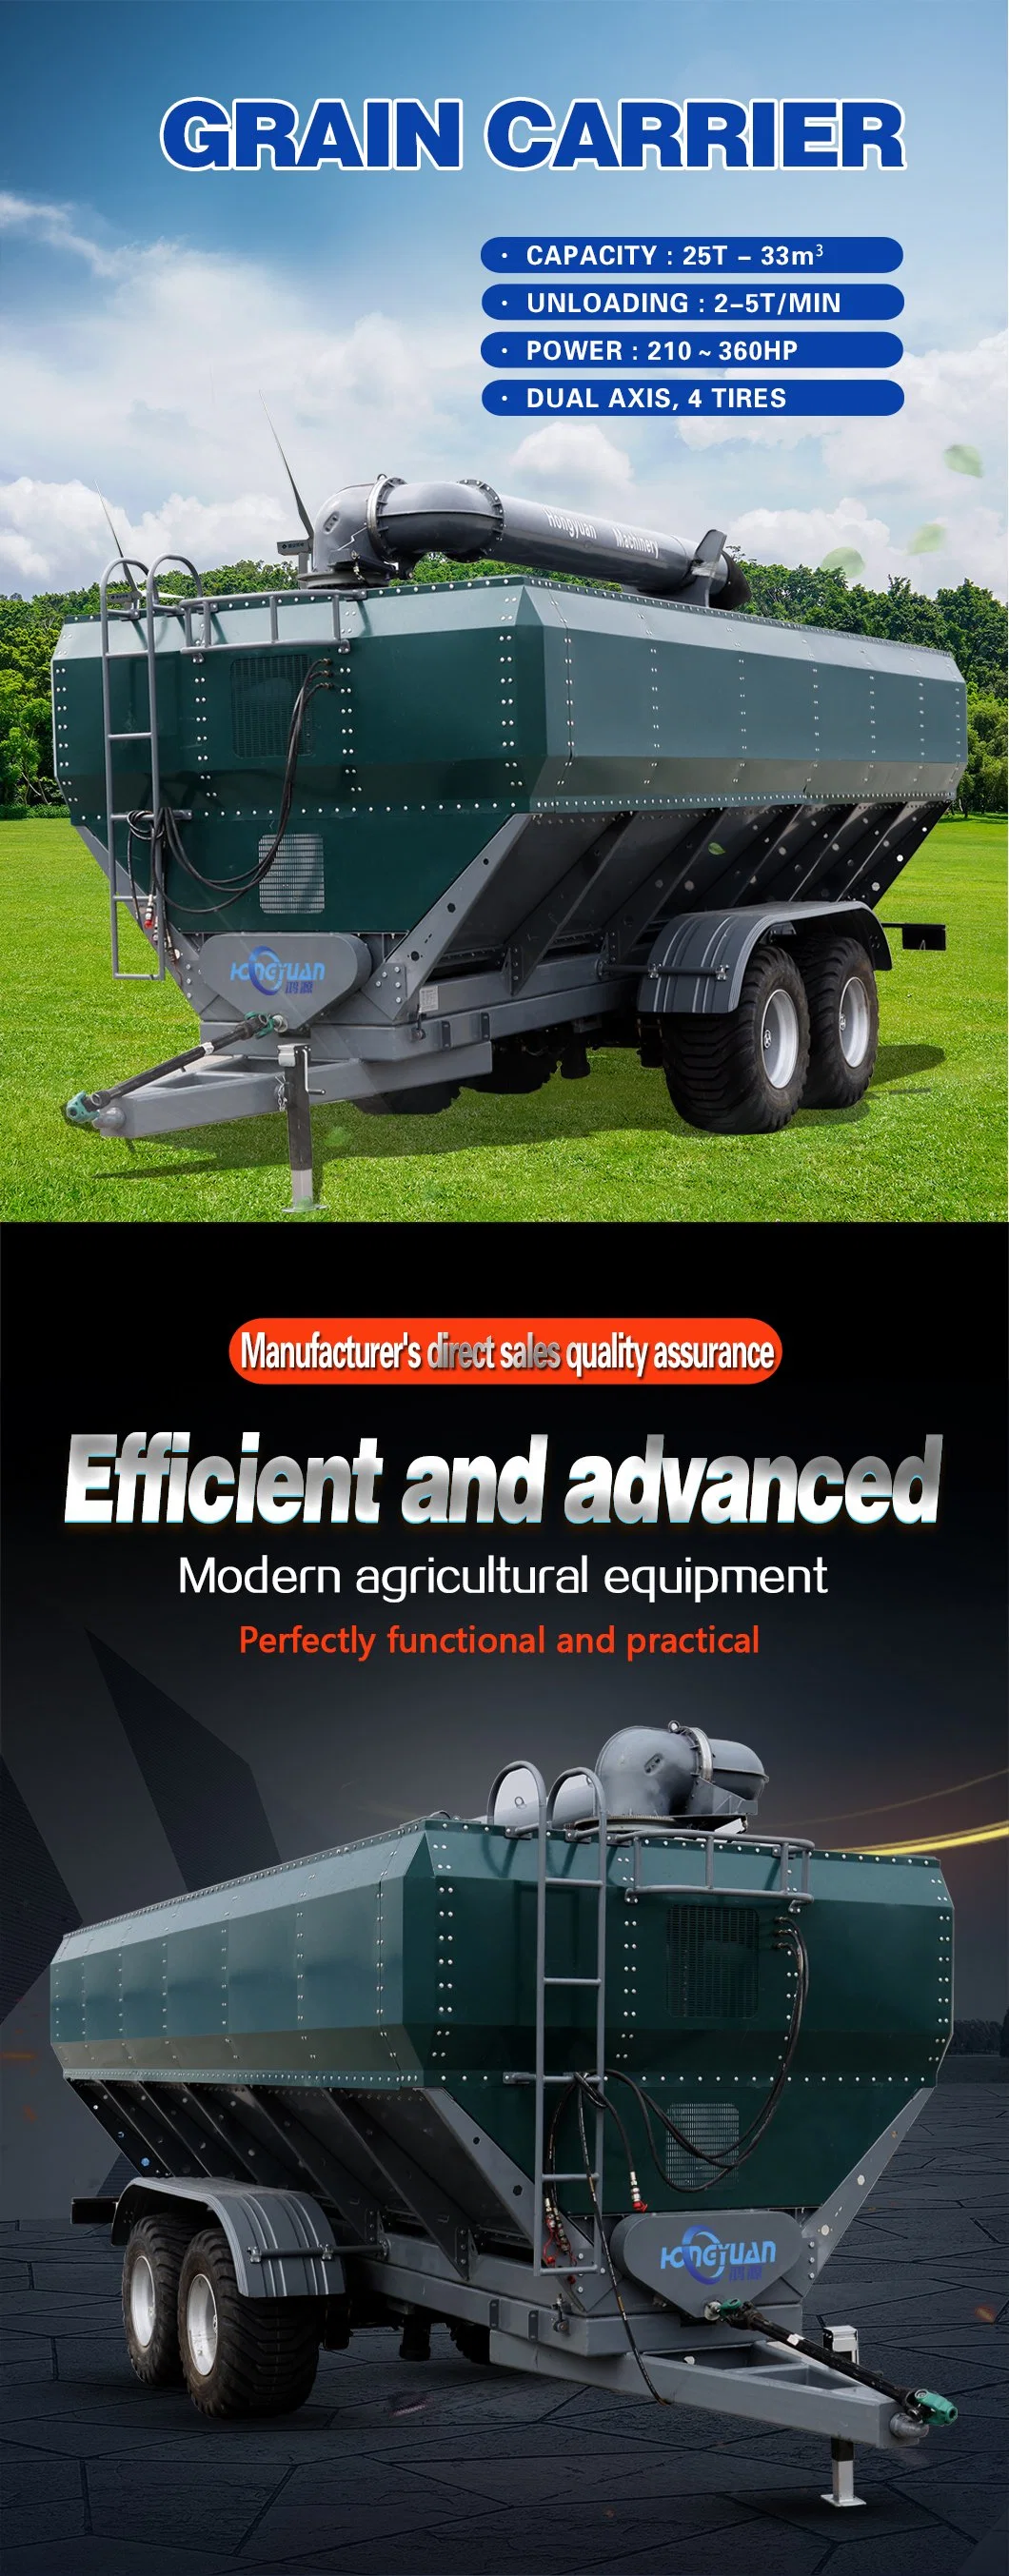 Backward Dual Axis Wagon Truck Tanker Seed Carrier Farm Trailer/Agricultural Grain Trailer